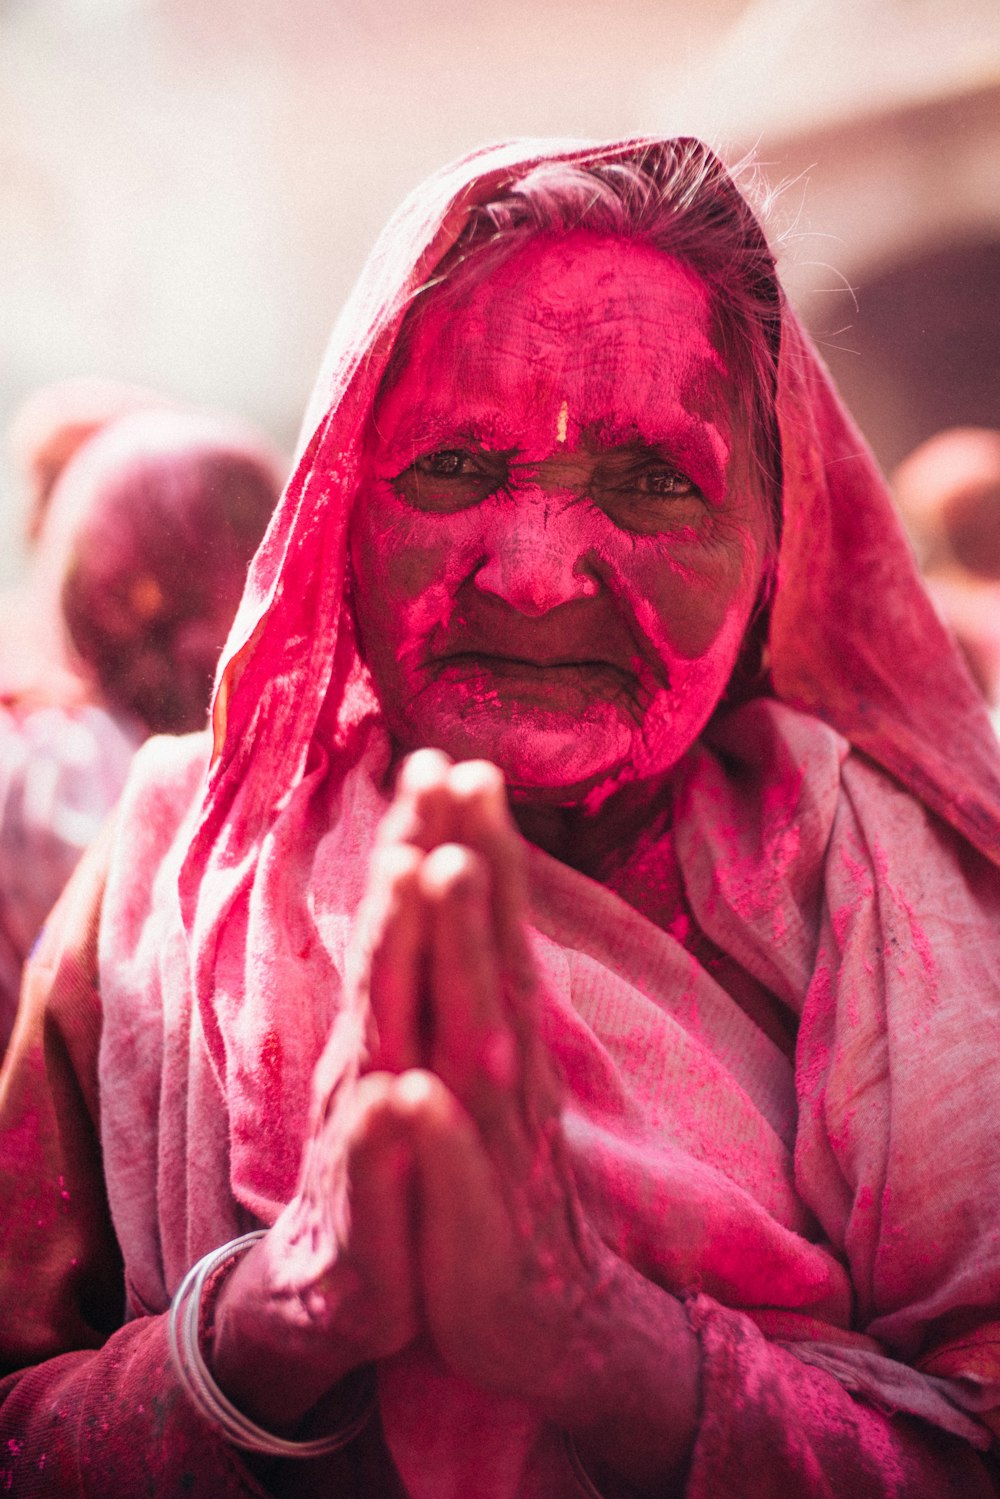 woman celebrating Holi photo – Free Holi Image on Unsplash